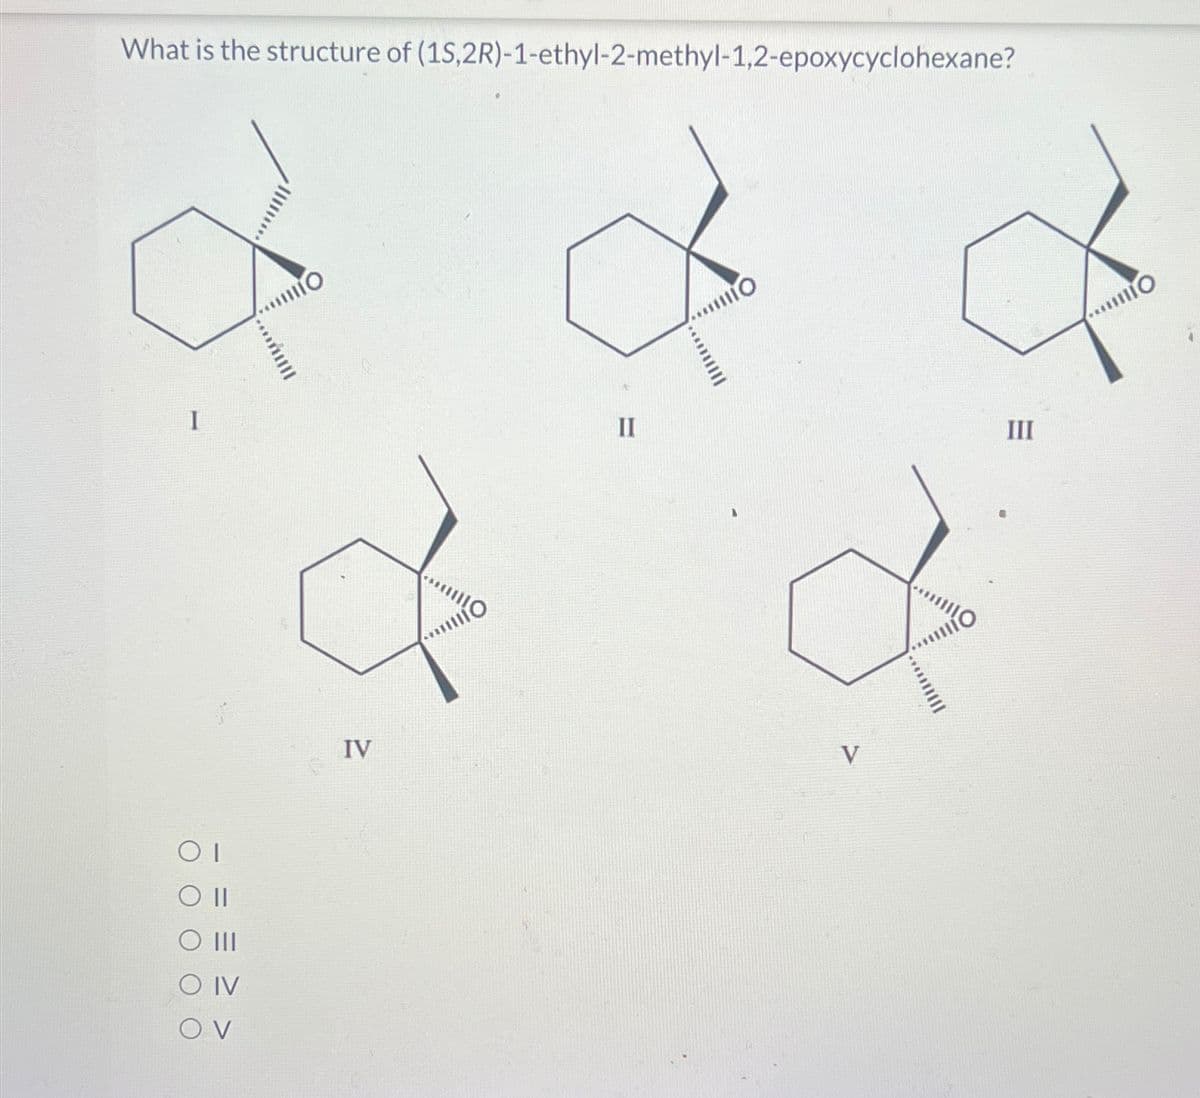 O II
III
O IV
OV
What is the structure of (1S,2R)-1-ethyl-2-methyl-1,2-epoxycyclohexane?
....
www
IV
го
II
шо
V
III